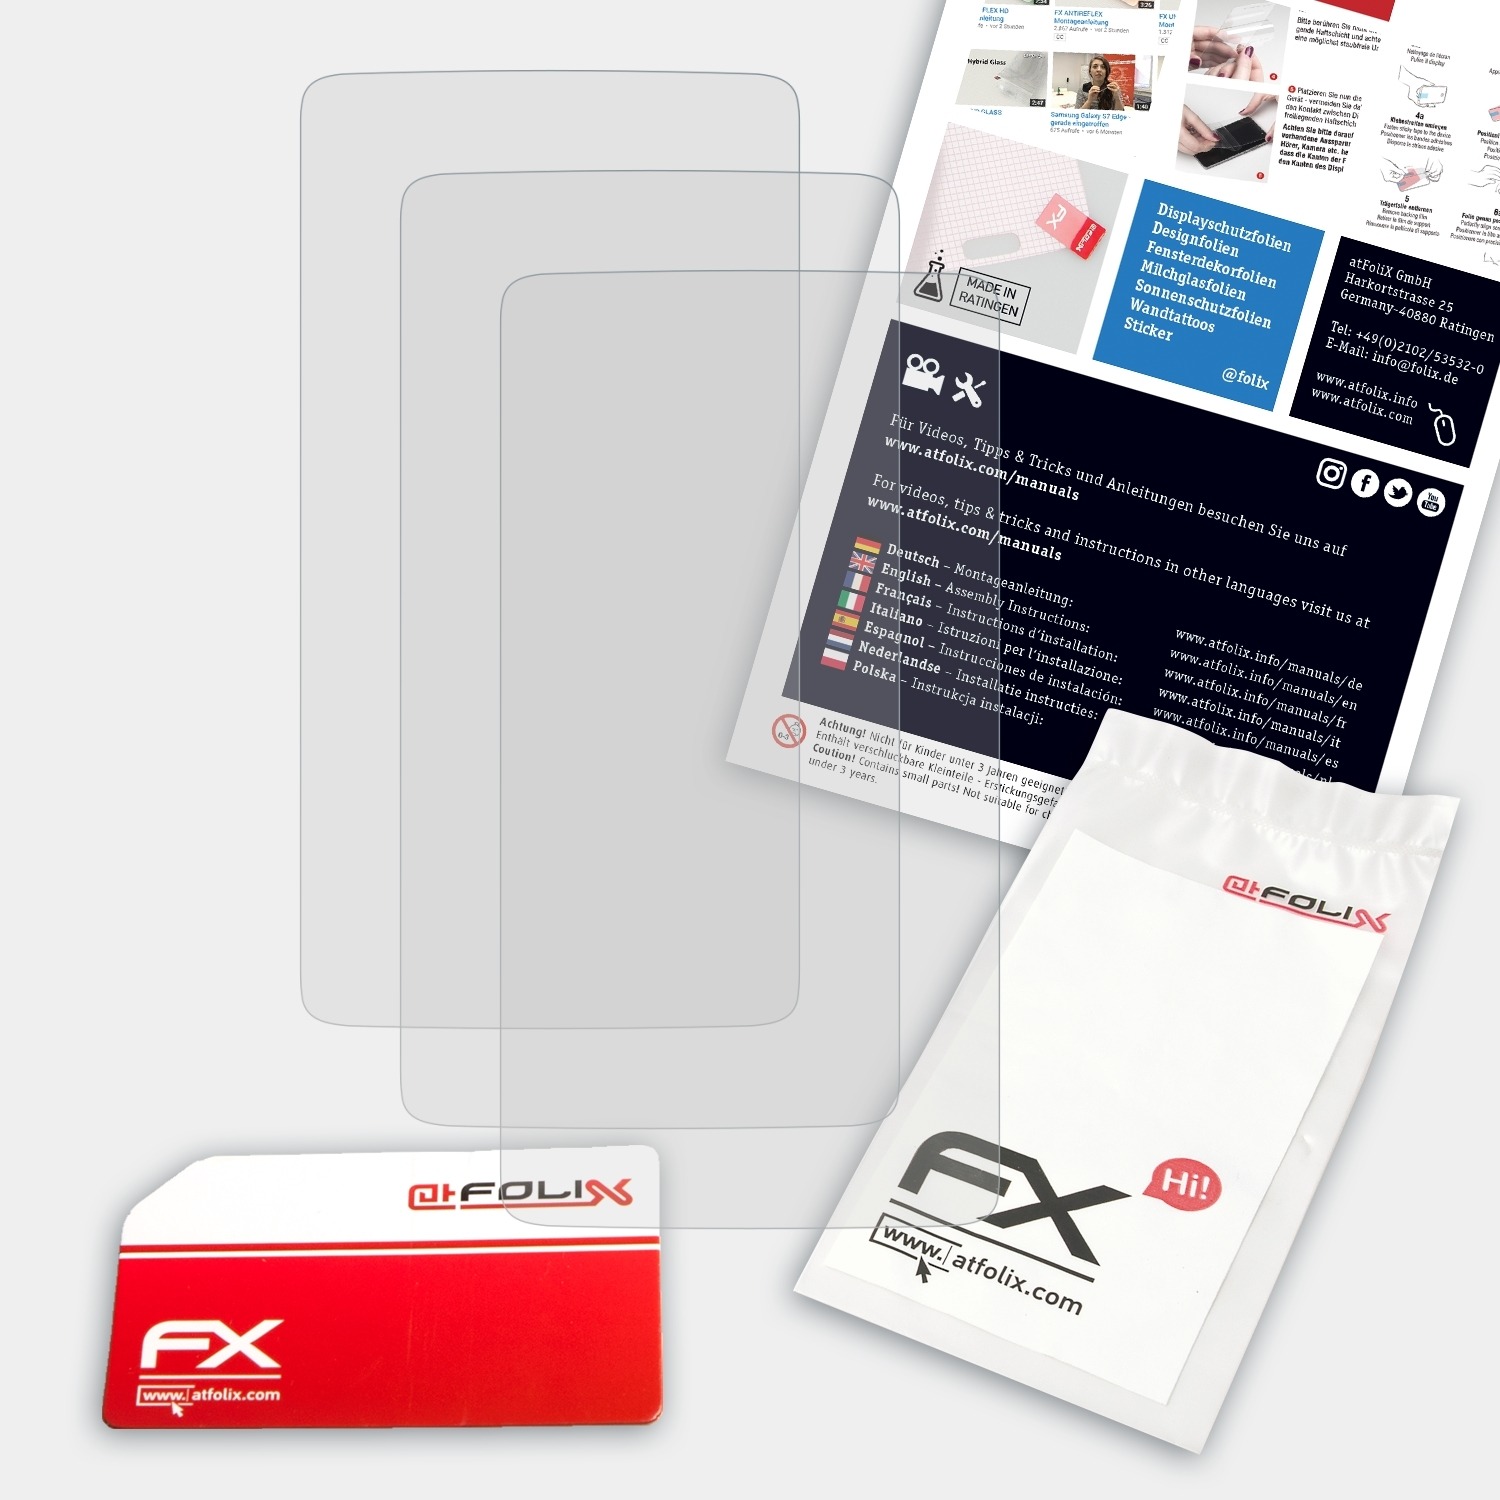 3x Displayschutz(für Acer Z200) FX-Antireflex ATFOLIX Liquid